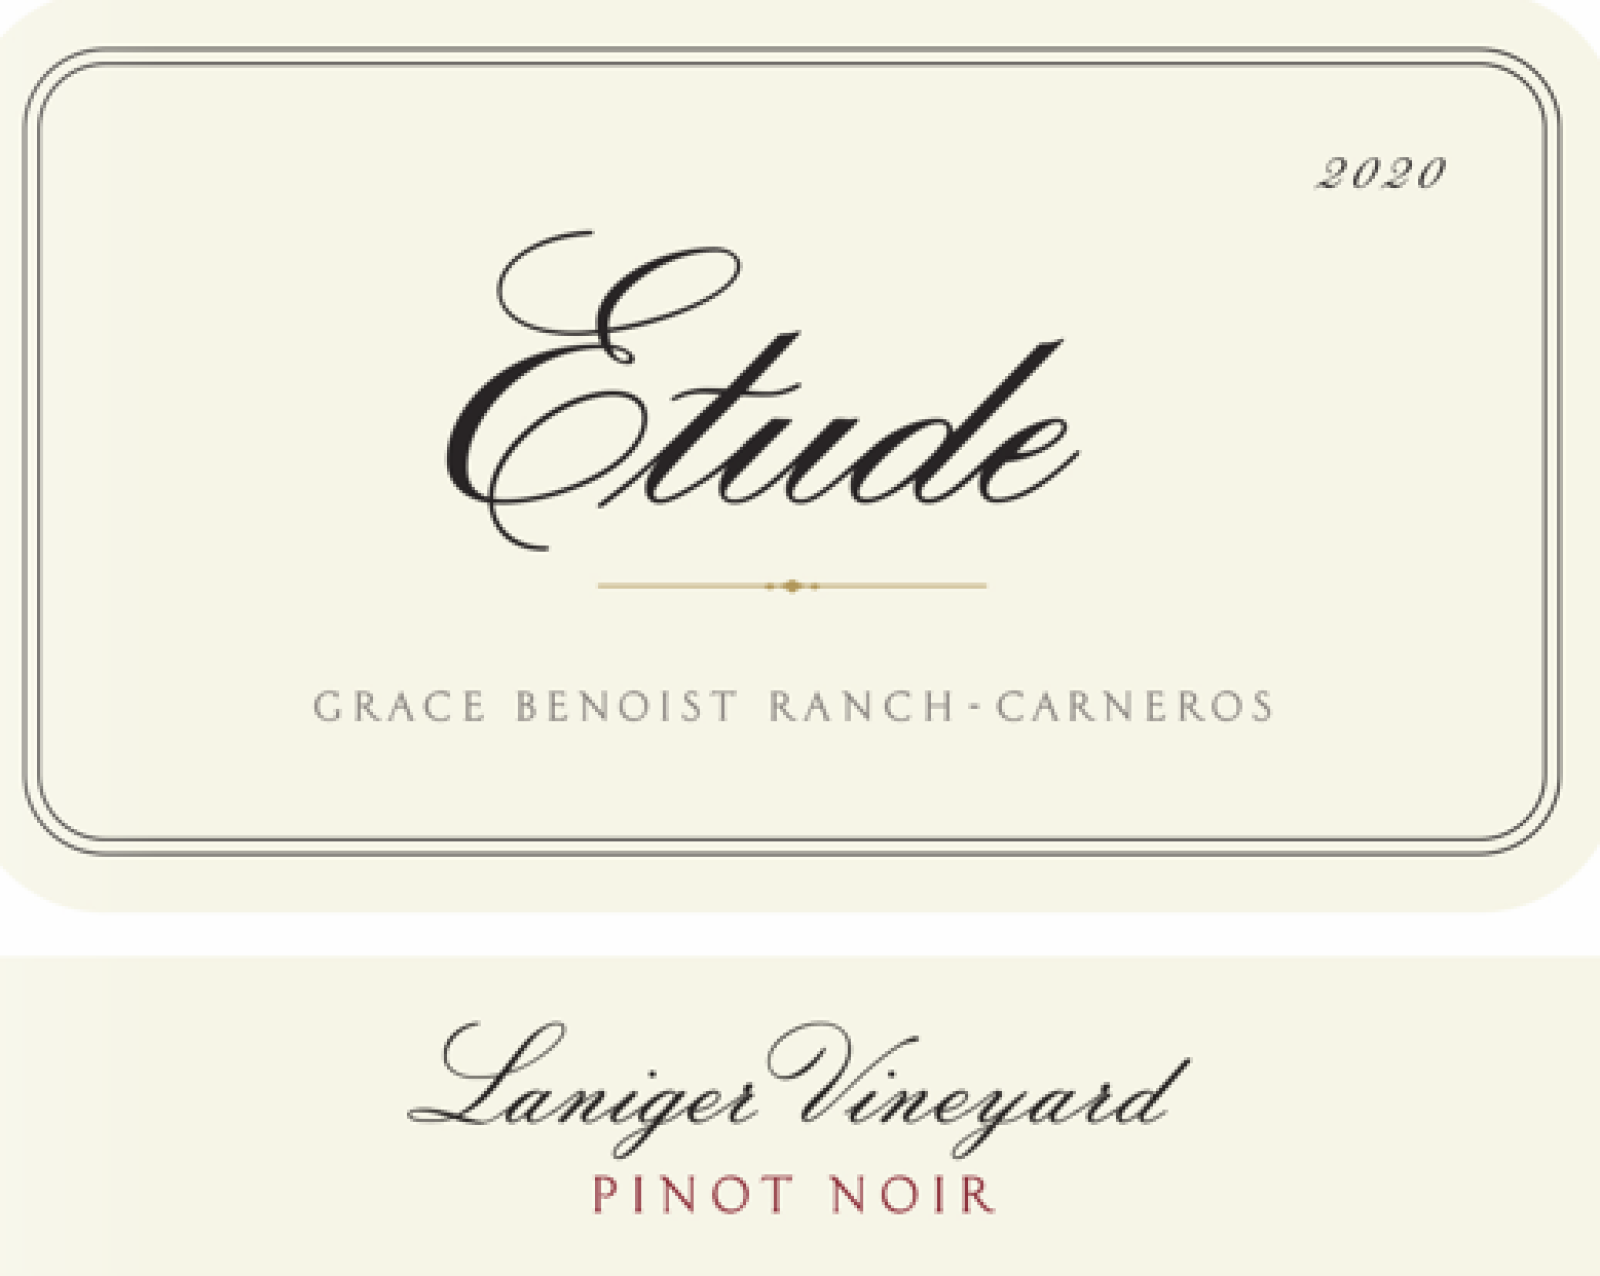 Etude Laniger Vineyard Pinot Noir 2020